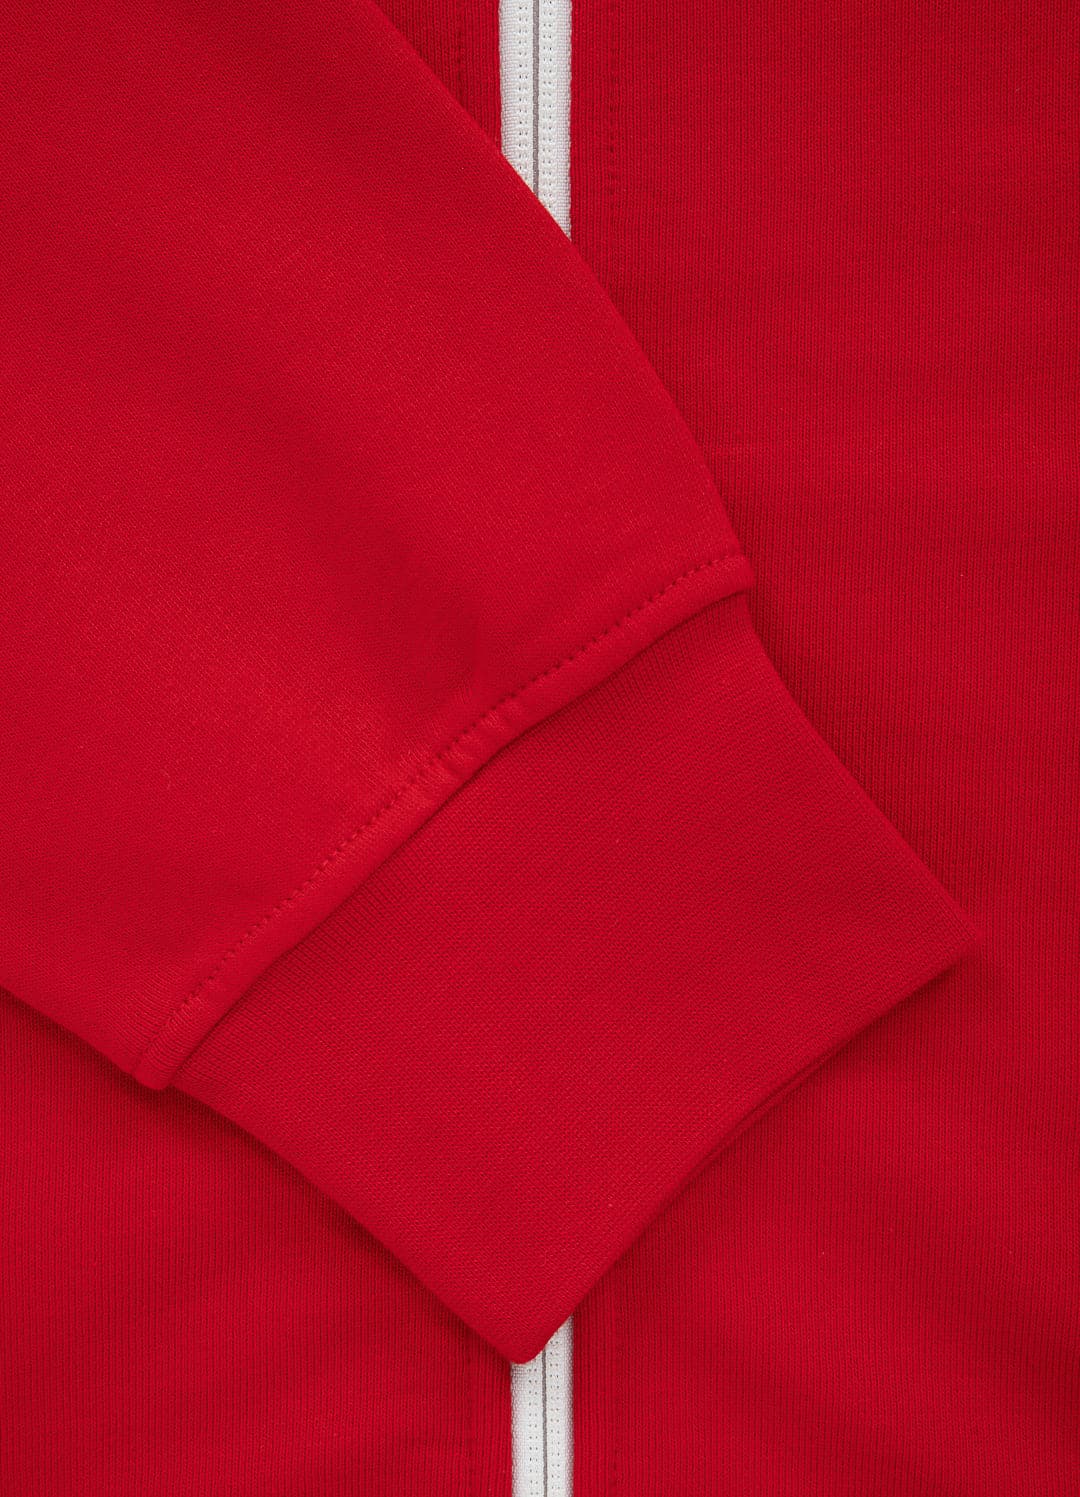 Bluza rozpinana z kapturem TERRY NEW LOGO Czerwona - Pitbull West Coast International Store 